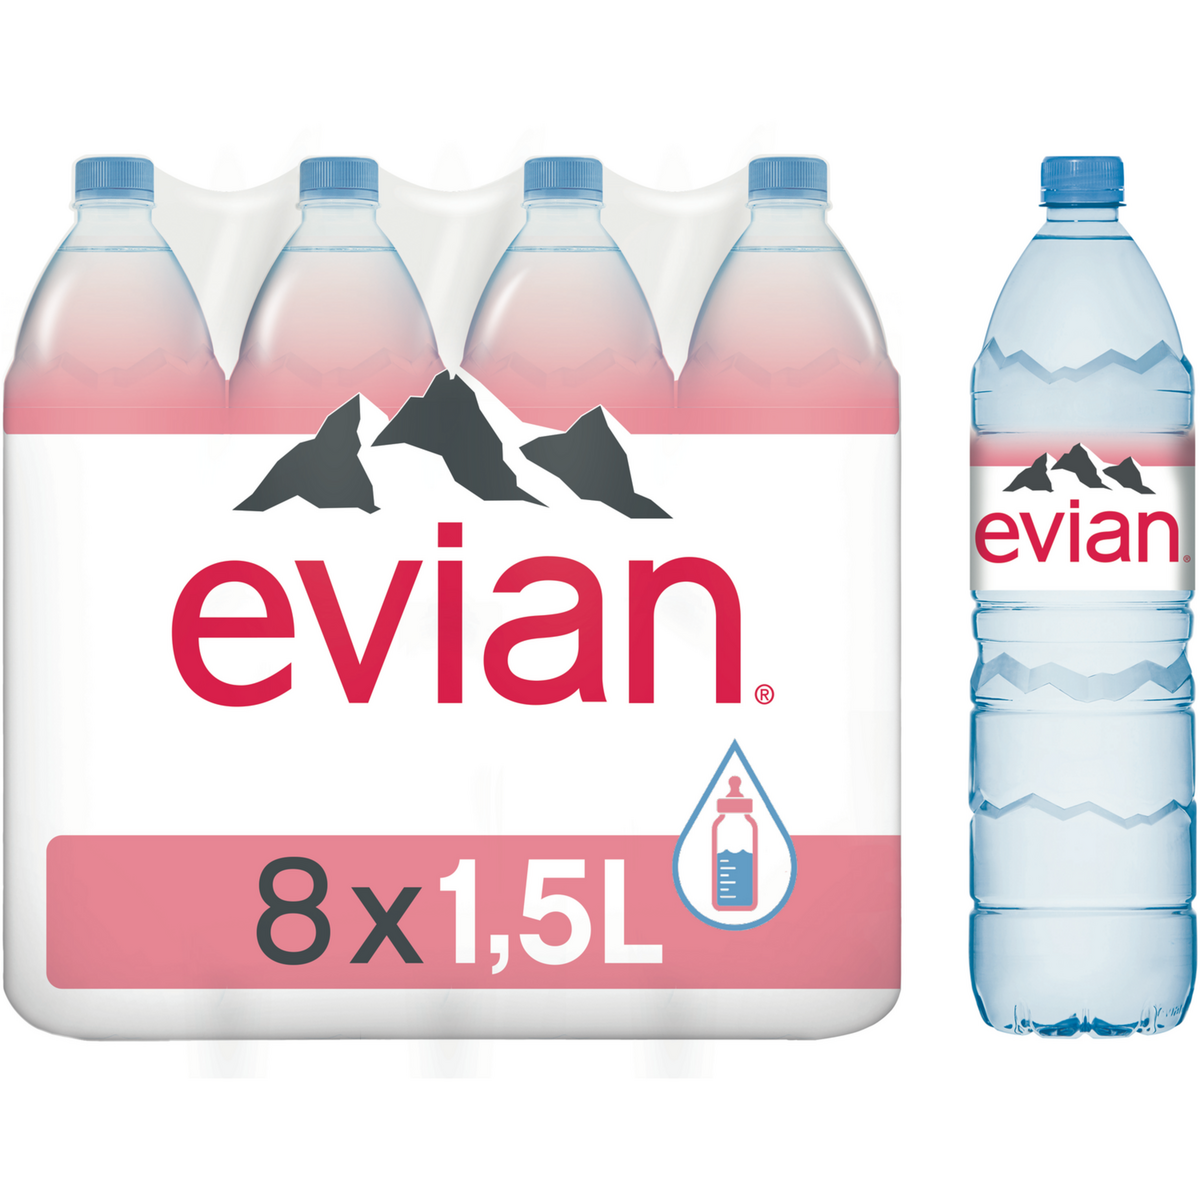 EVIAN Evian Eau minérale plate naturelle 8x1,5l 8x1,5l